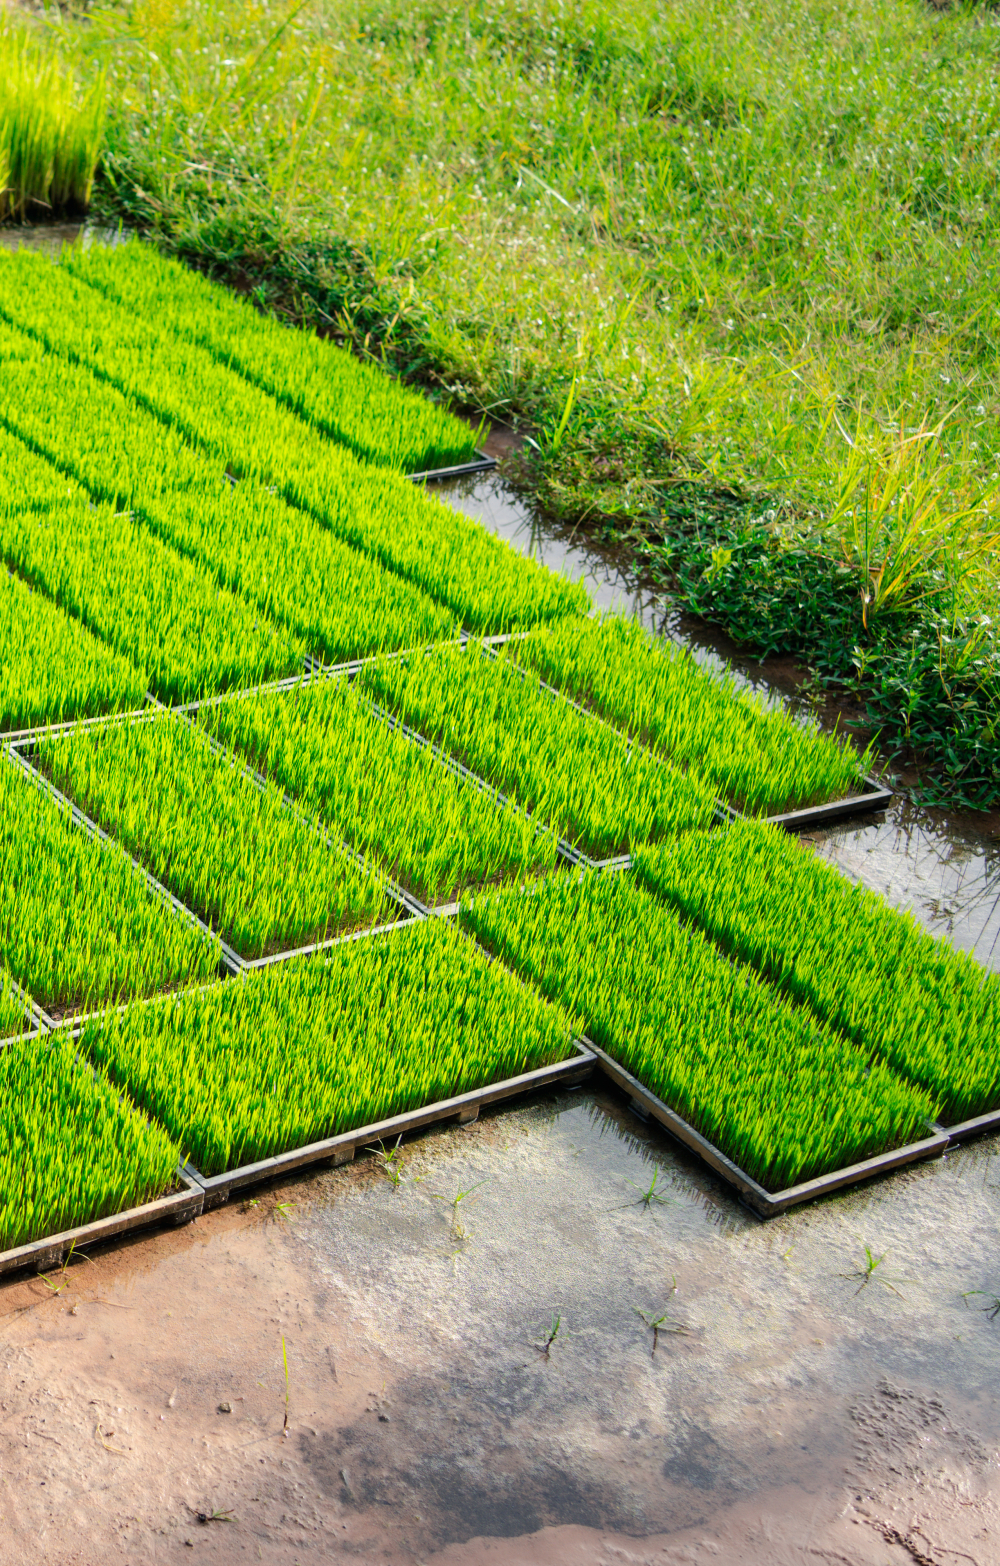 Préparation des plants de riz planter dans la culture agricole de plateaux d’eau douce